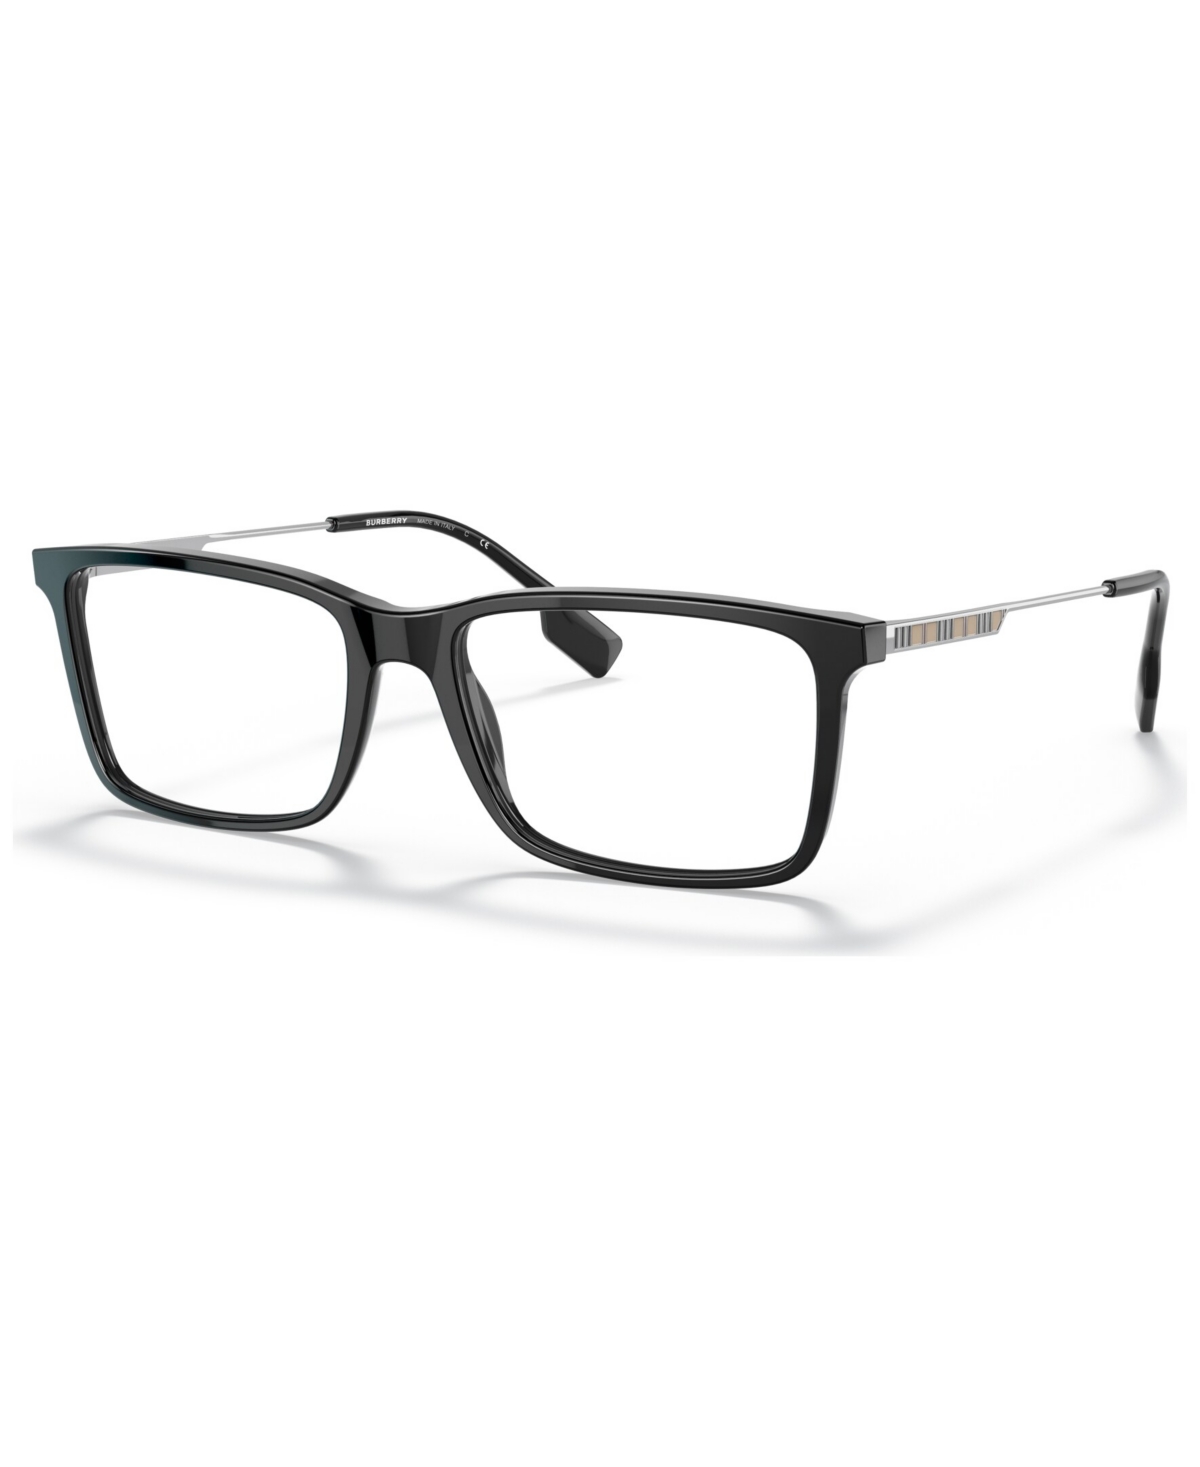 Men's Rectangle Eyeglasses, BE233957-o - Black